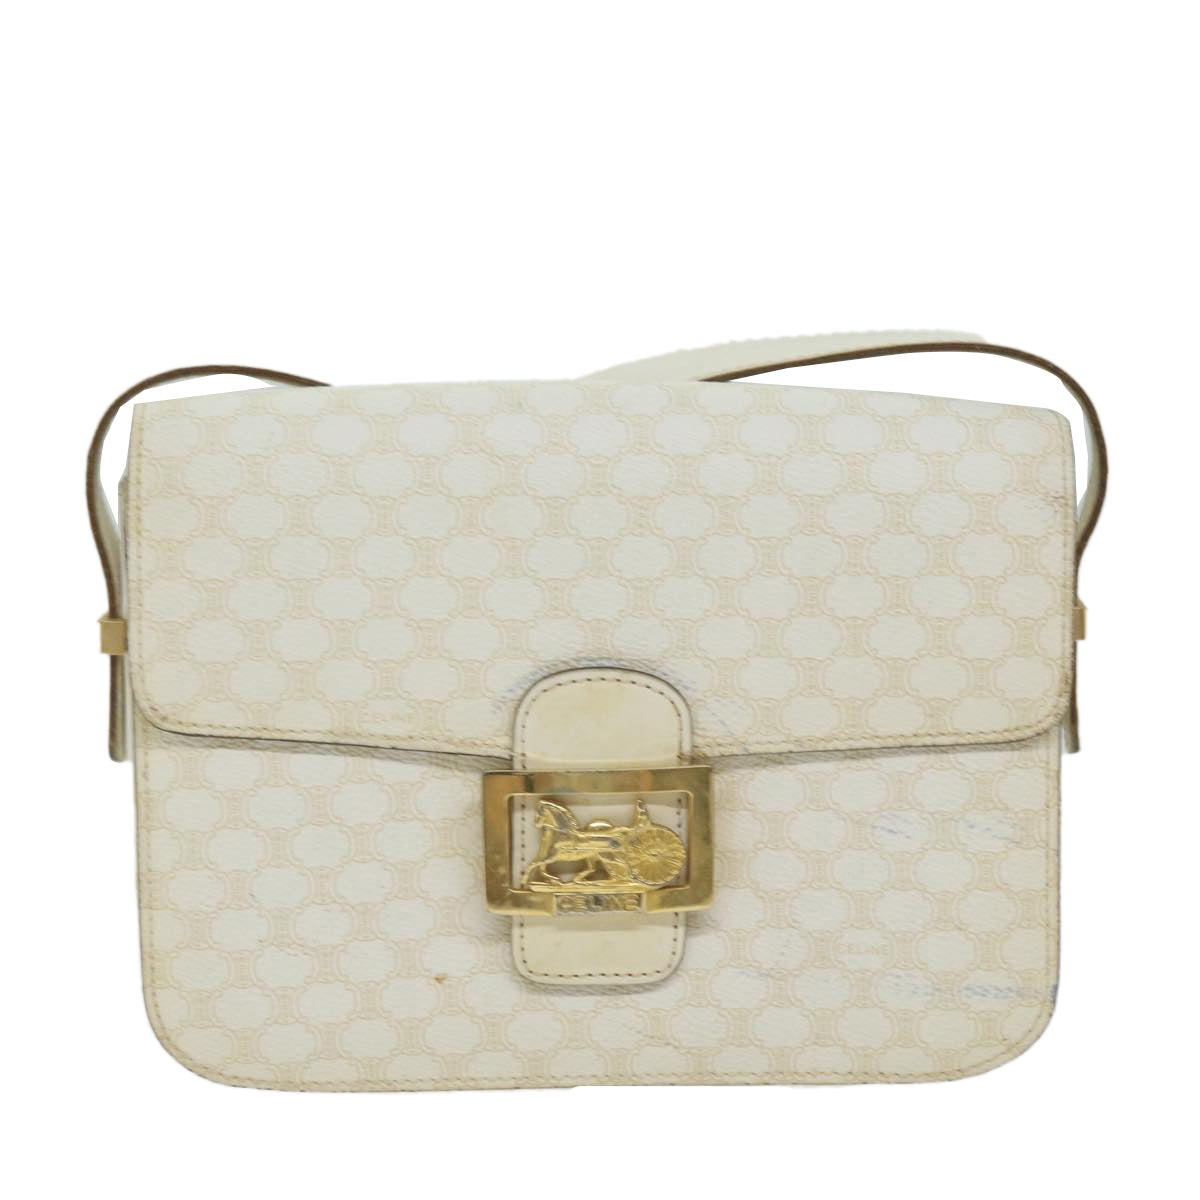 CELINE Macadam Canvas Shoulder Bag PVC Leather White Auth 62462 - 0